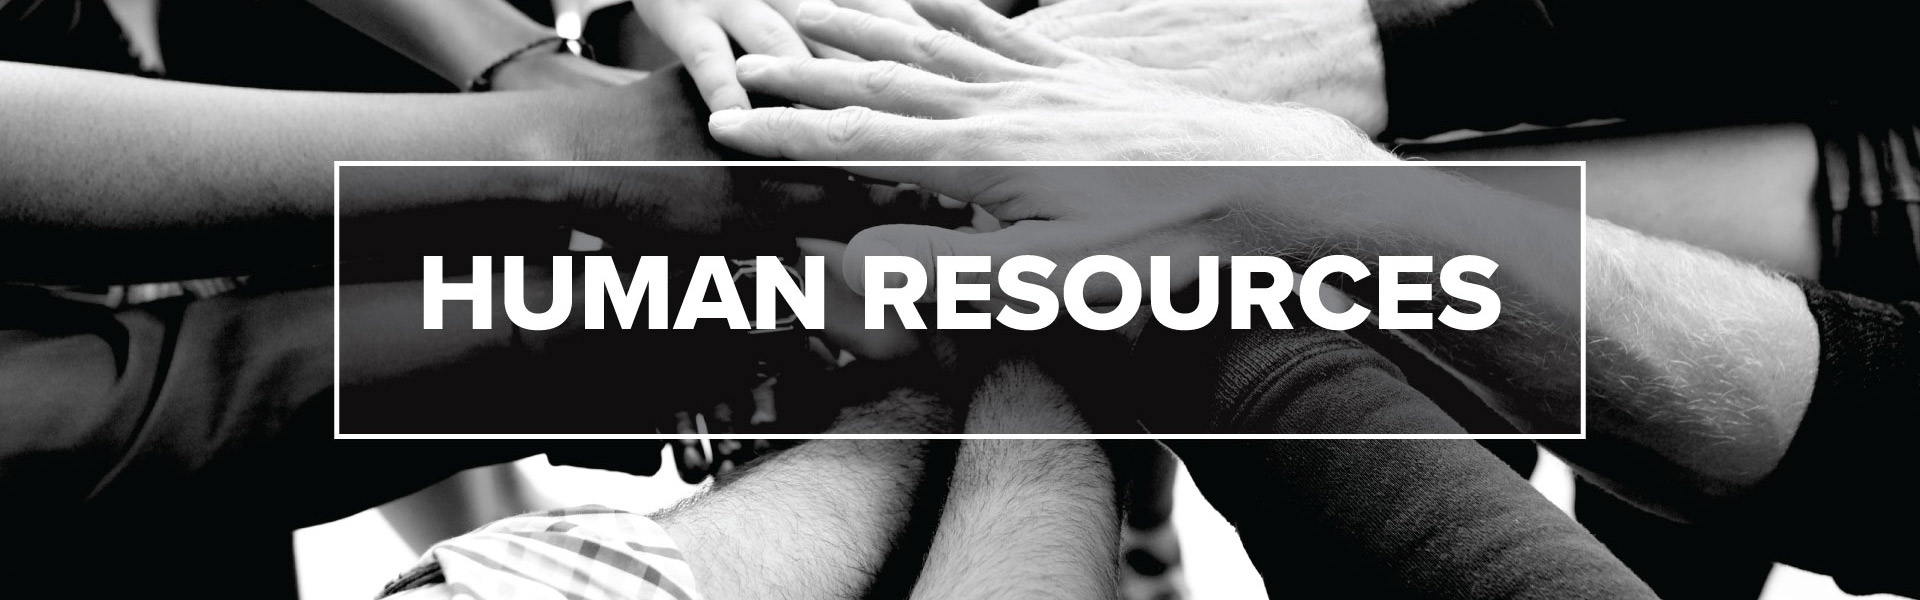 Human Resources | UW-Parkside